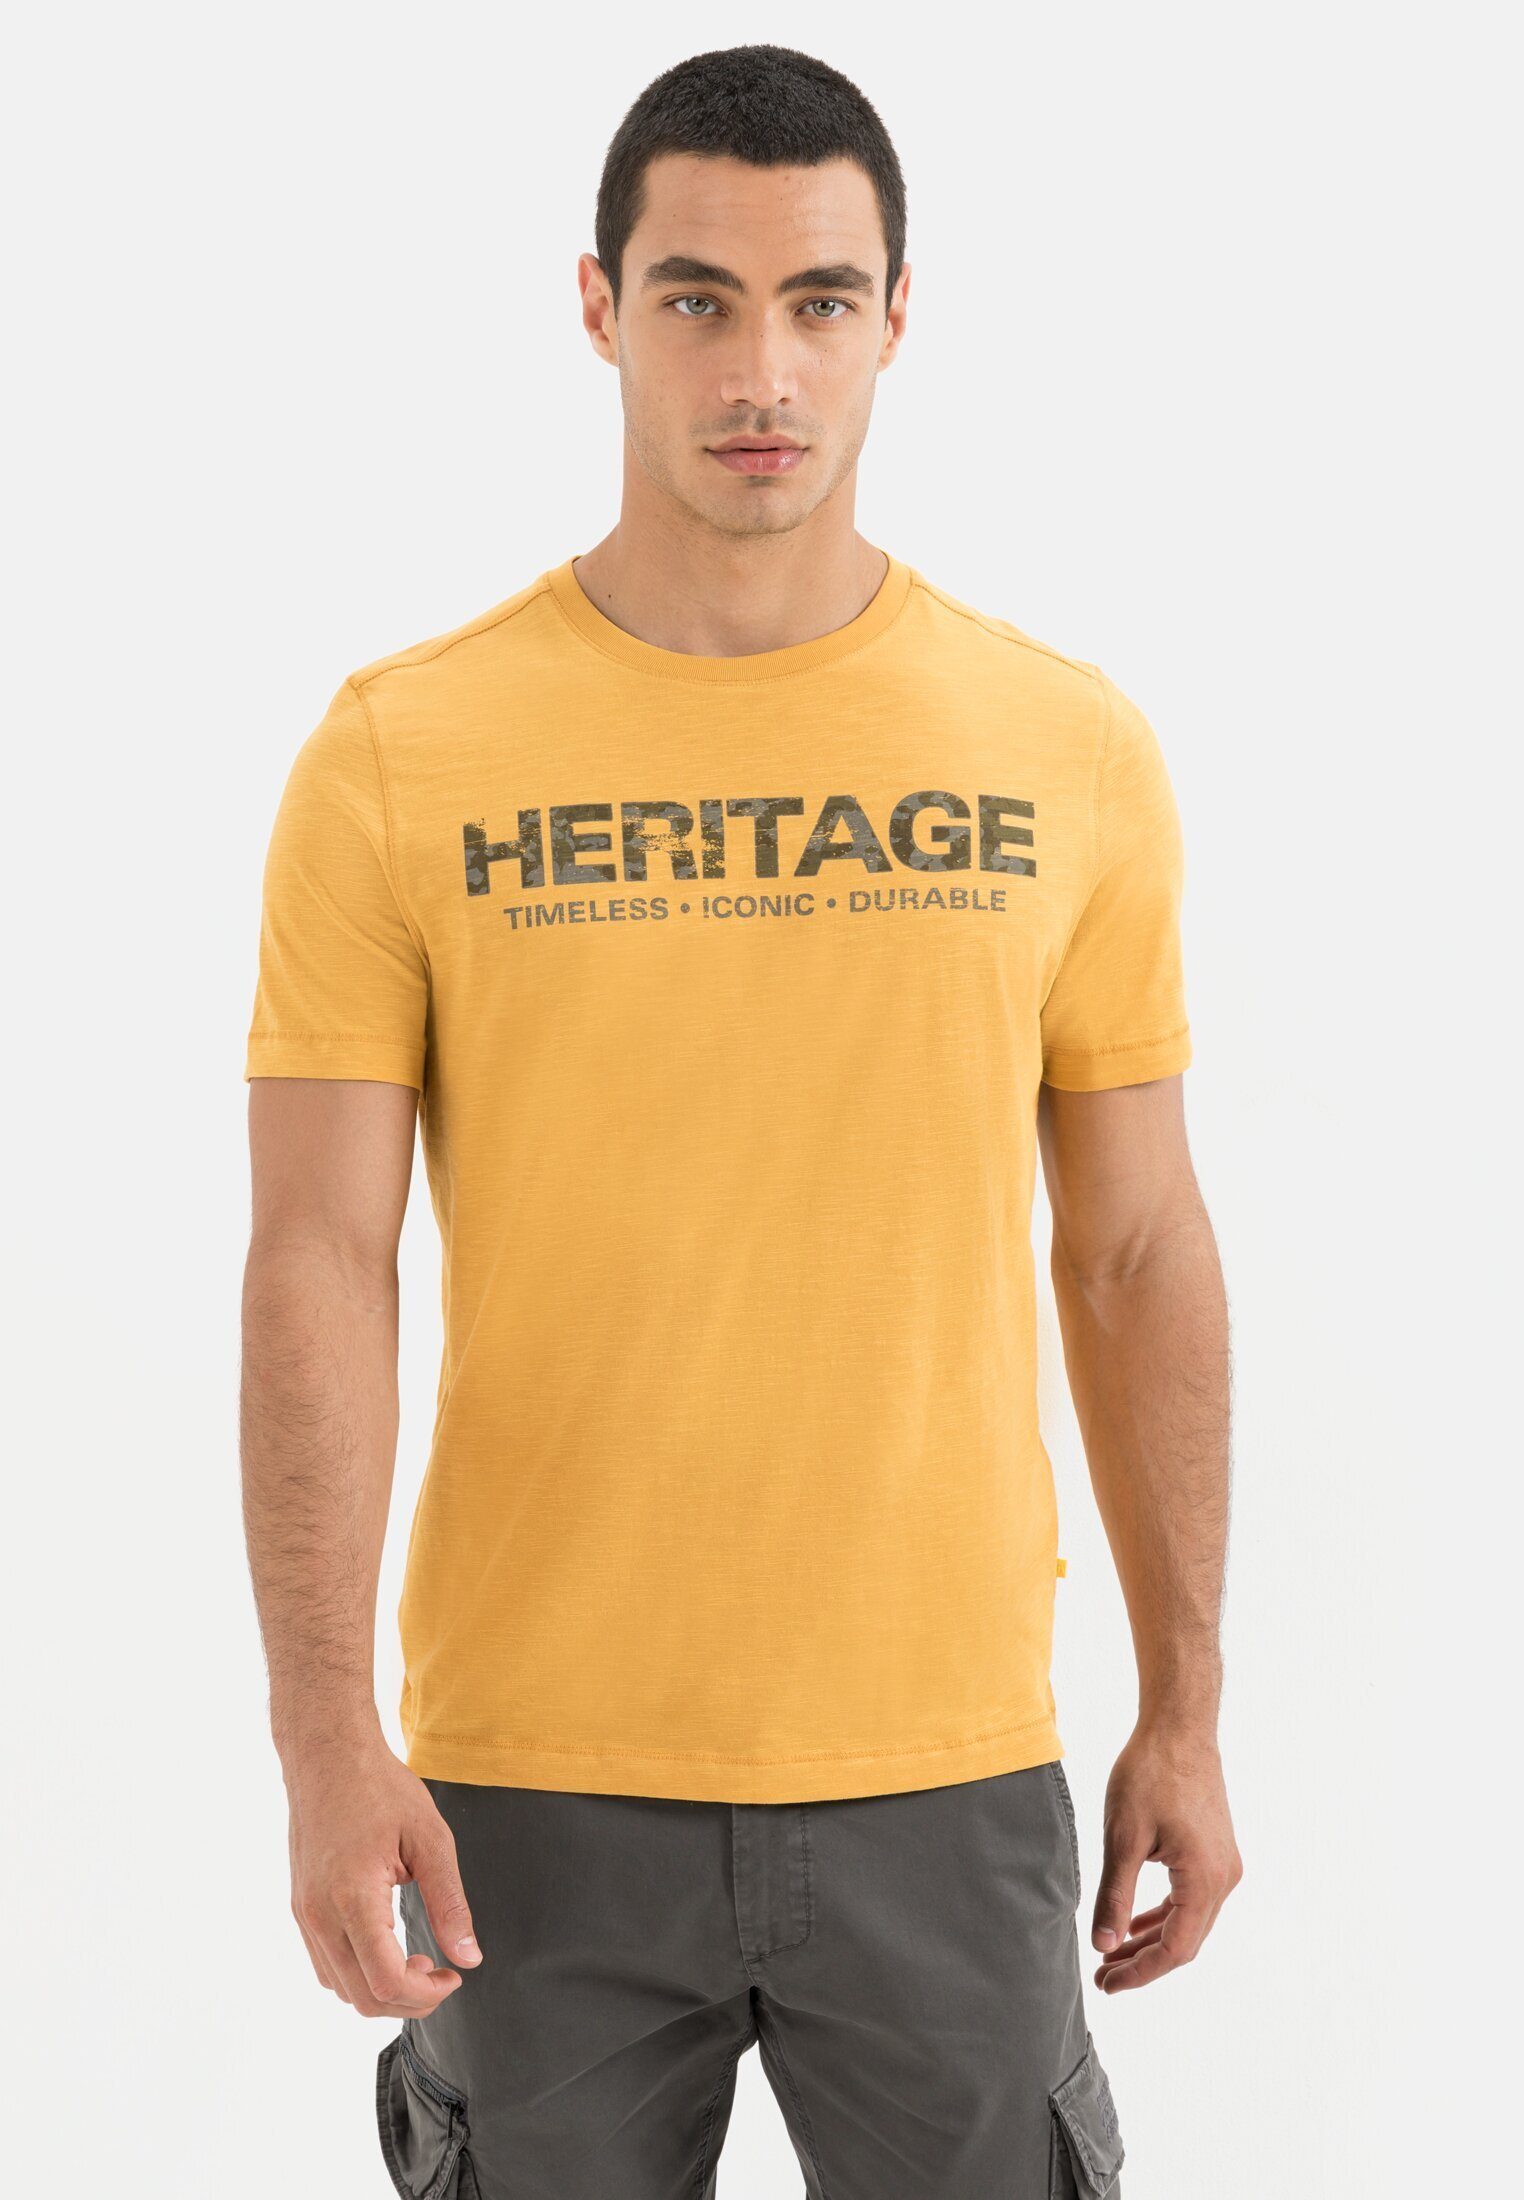 active Bio-Baumwolle T-Shirt camel Gelb aus